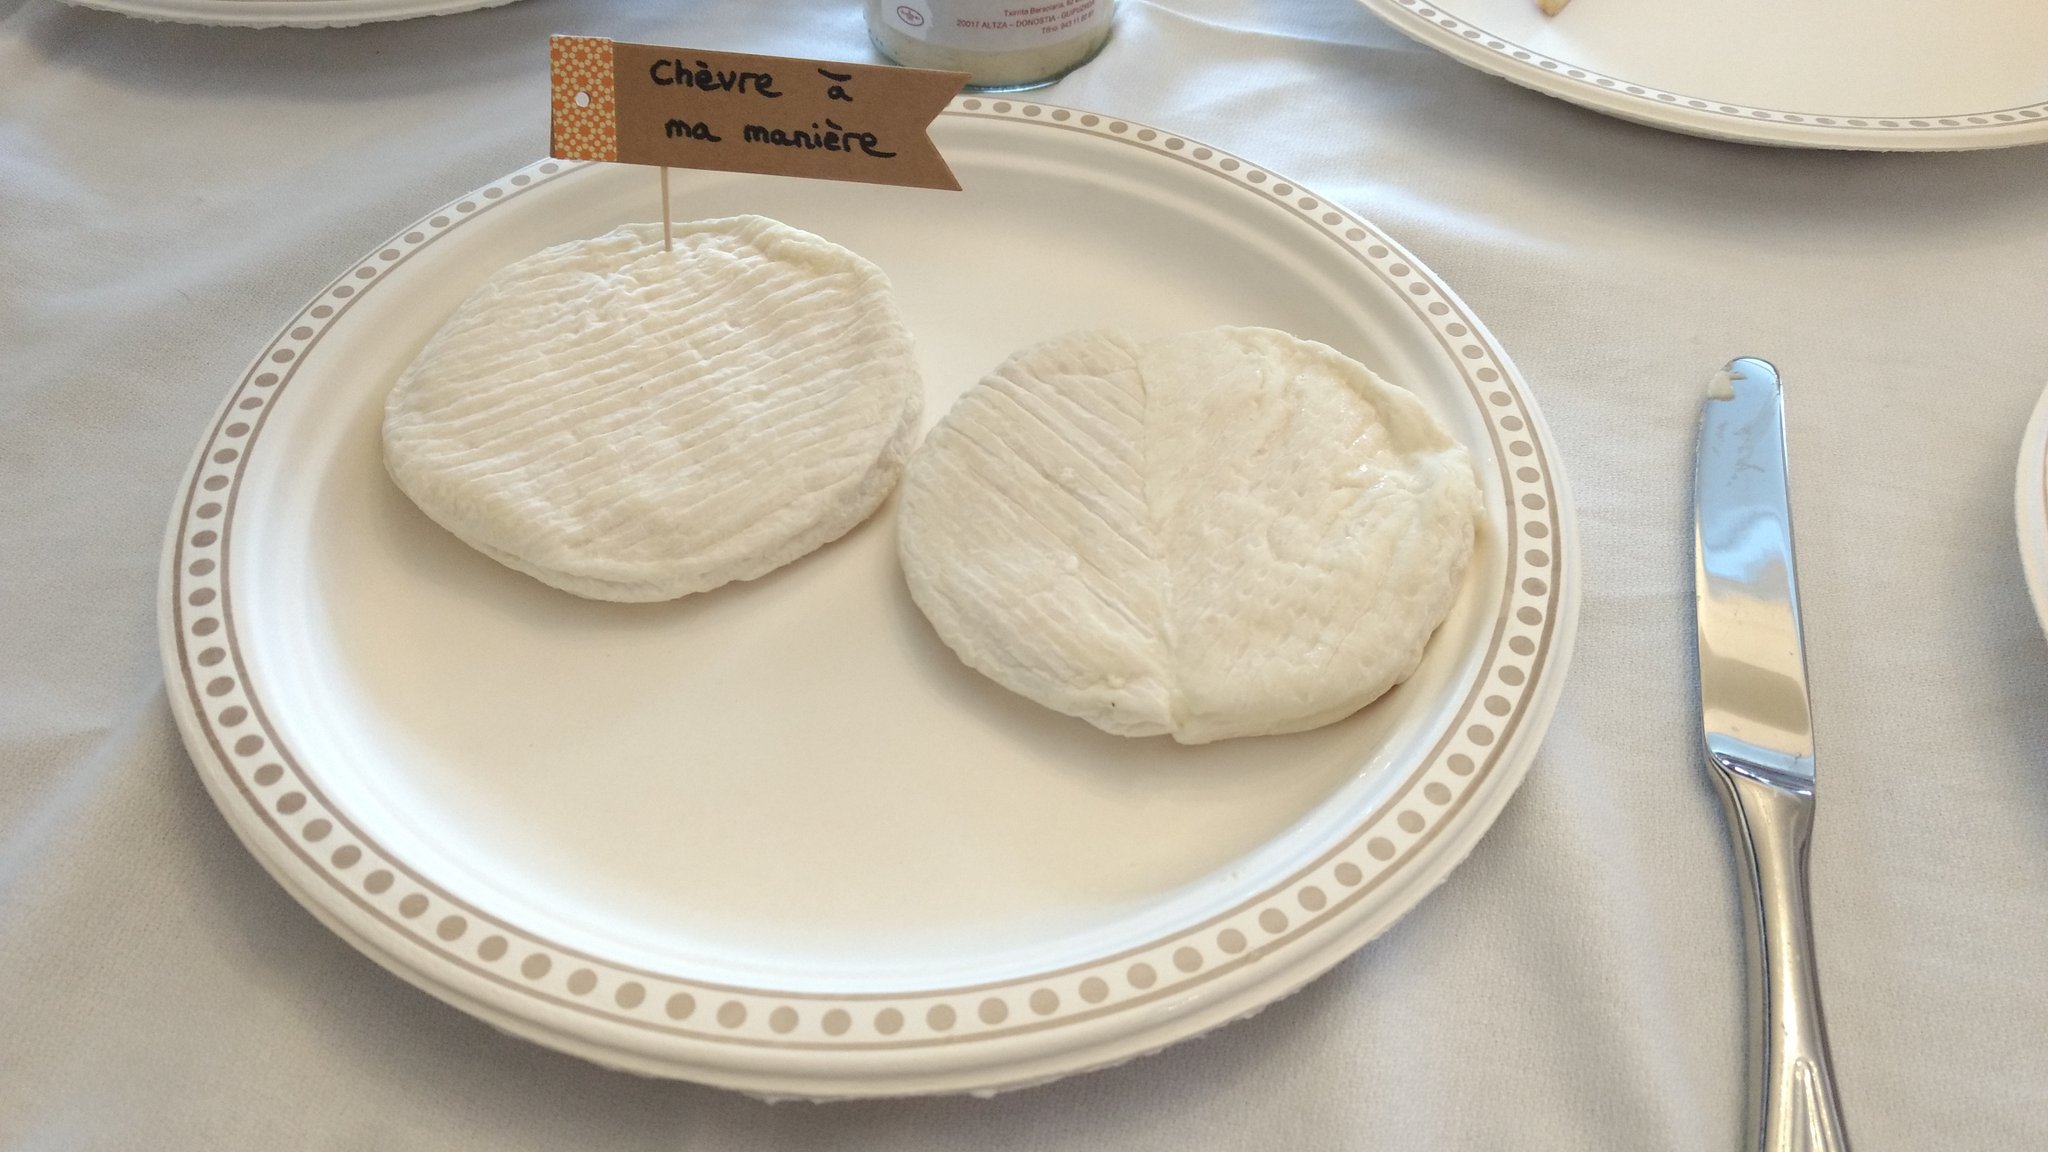 Deux fromages de chèvres dans une assiette, avec un petit drapeau indiquant "Chèvre à ma manière" planté dedans.